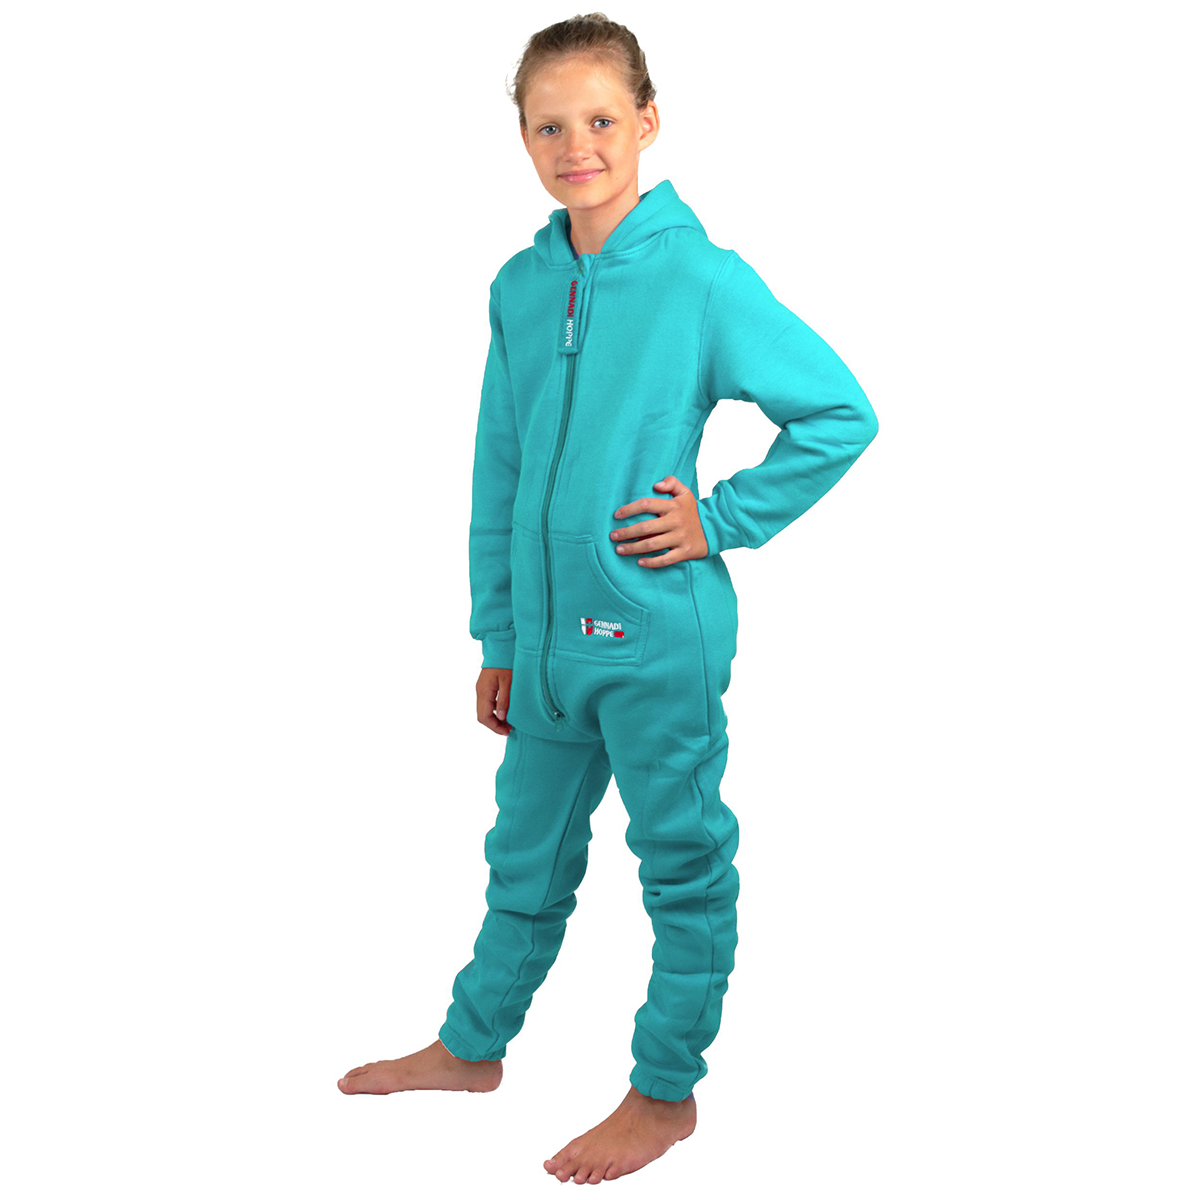 Gennadi Hoppe Kinder Jumpsuit - Jungen, Mädchen Onesie Jogger Einteiler Overall Jogging Anzug Trainingsanzug